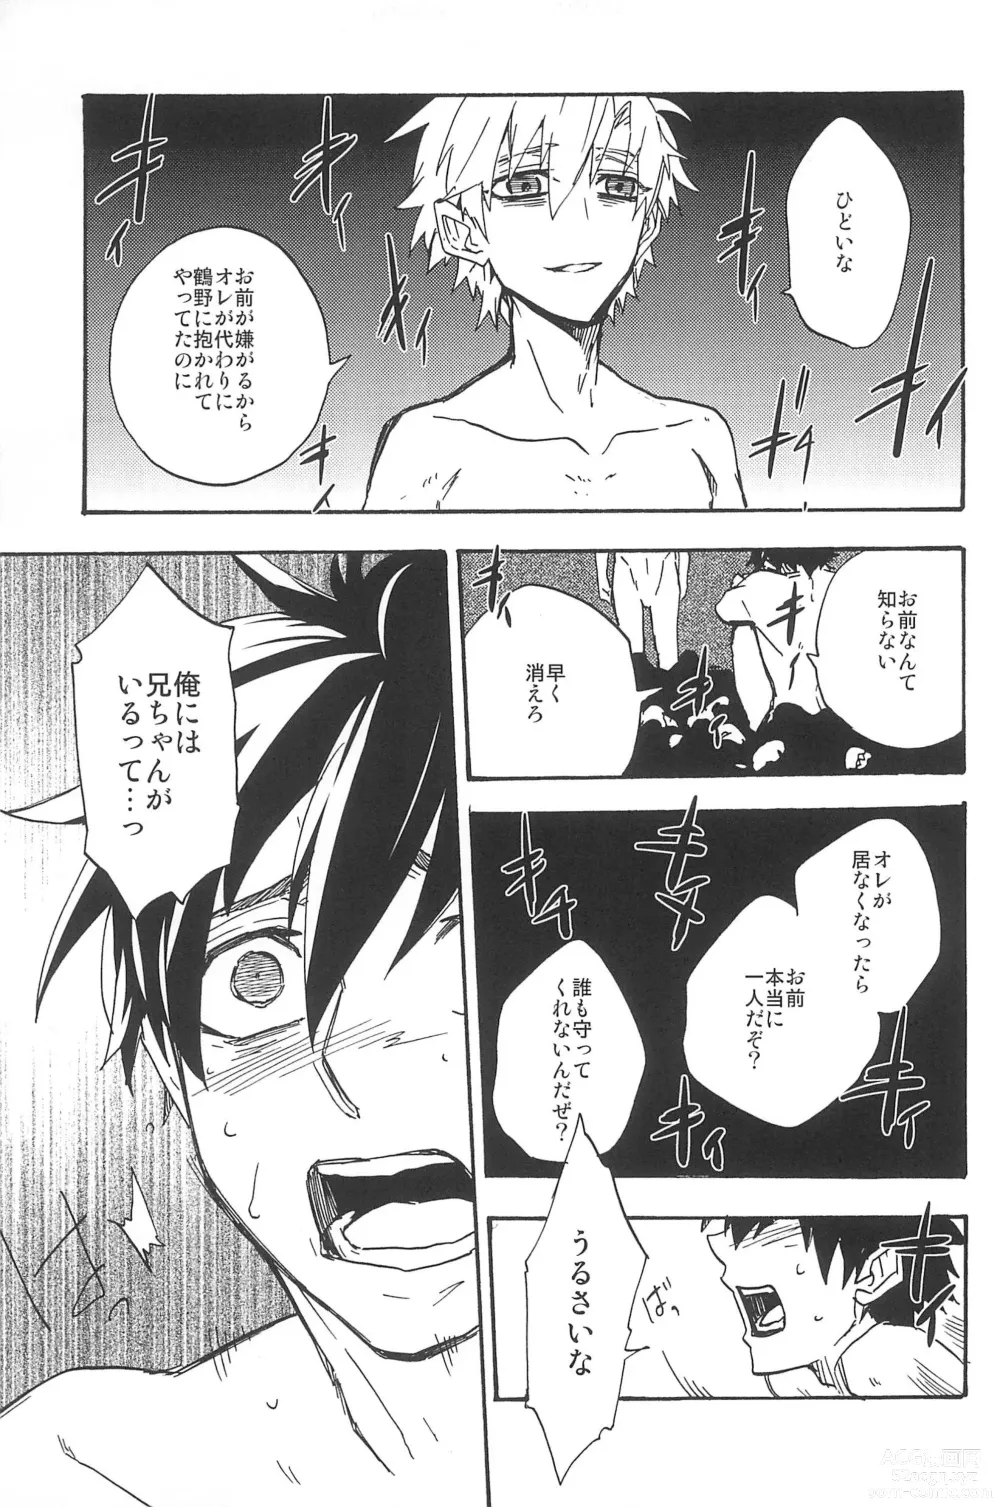 Page 311 of doujinshi RE:BERSERK